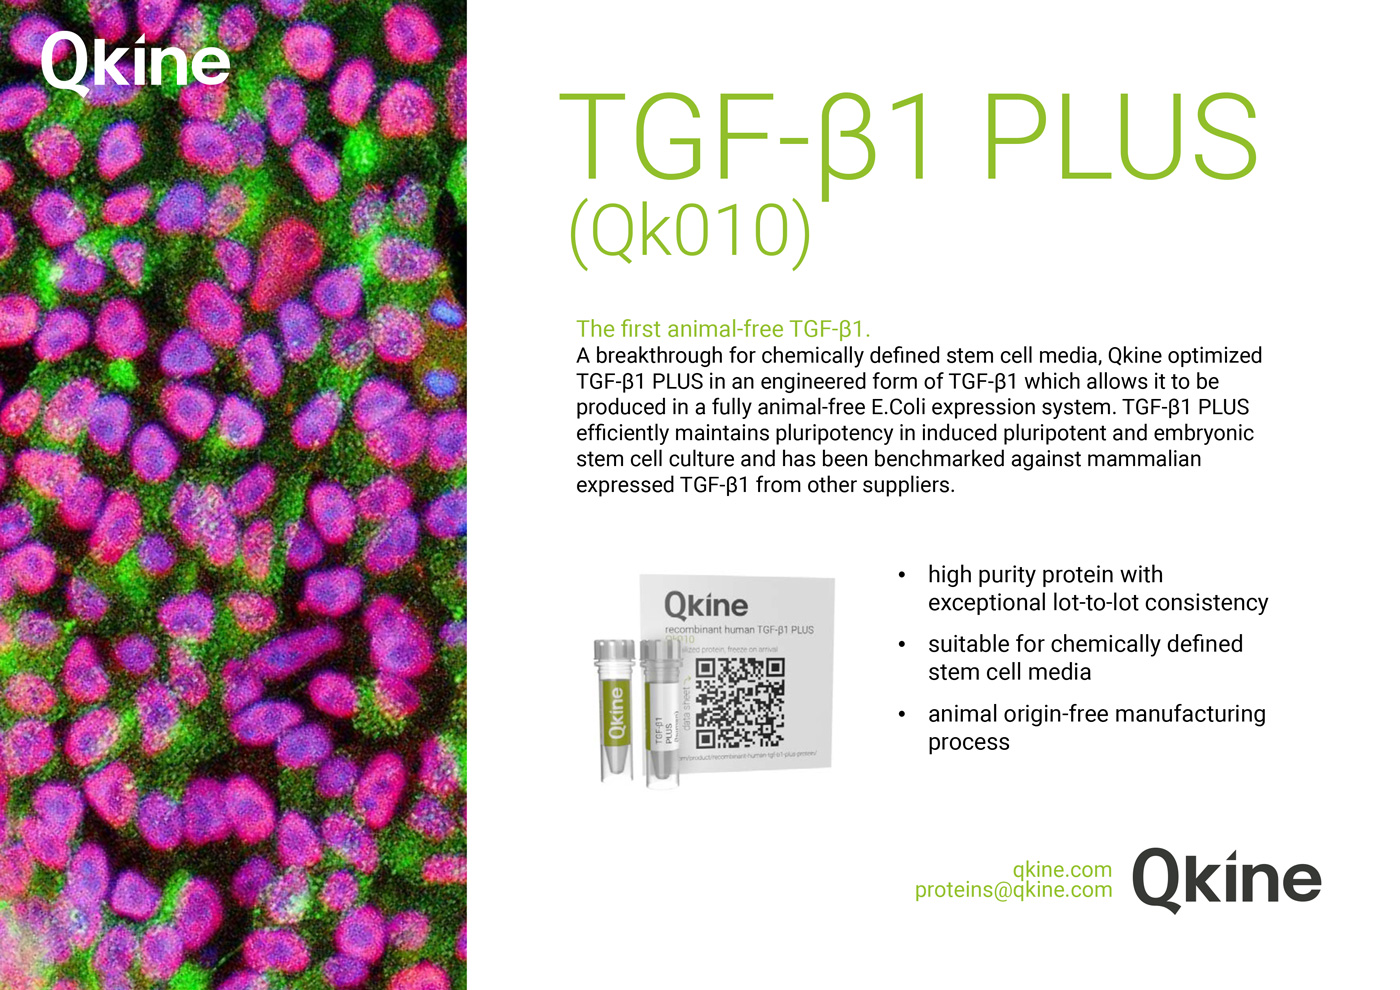 Qkine TGF-β1 PLUS protein